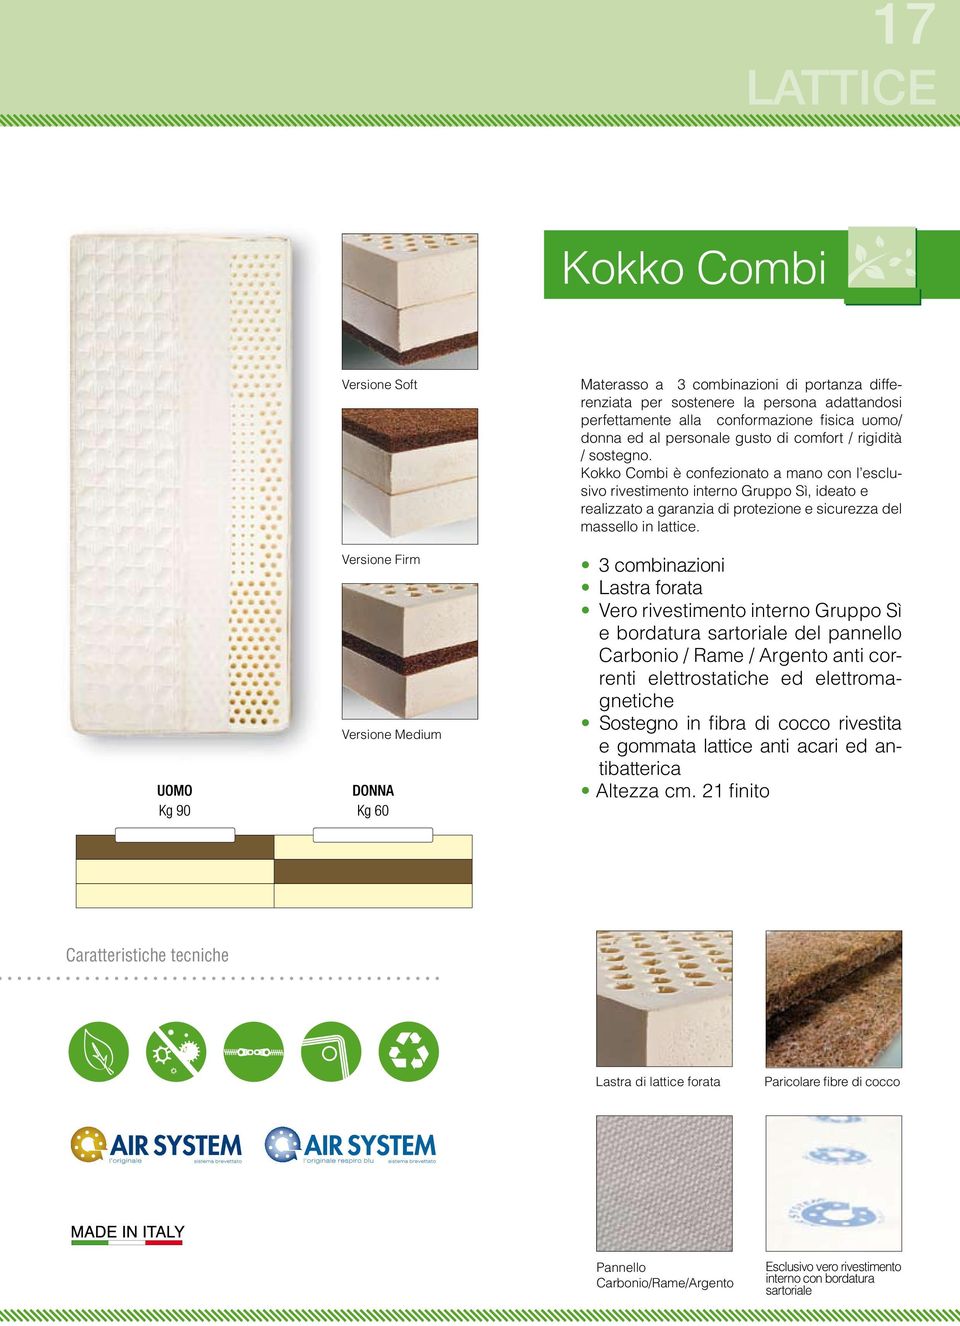 Kokko Combi è confezionato a mano con l esclusivo rivestimento interno Gruppo Sì, ideato e realizzato a garanzia di protezione e sicurezza del massello in lattice.